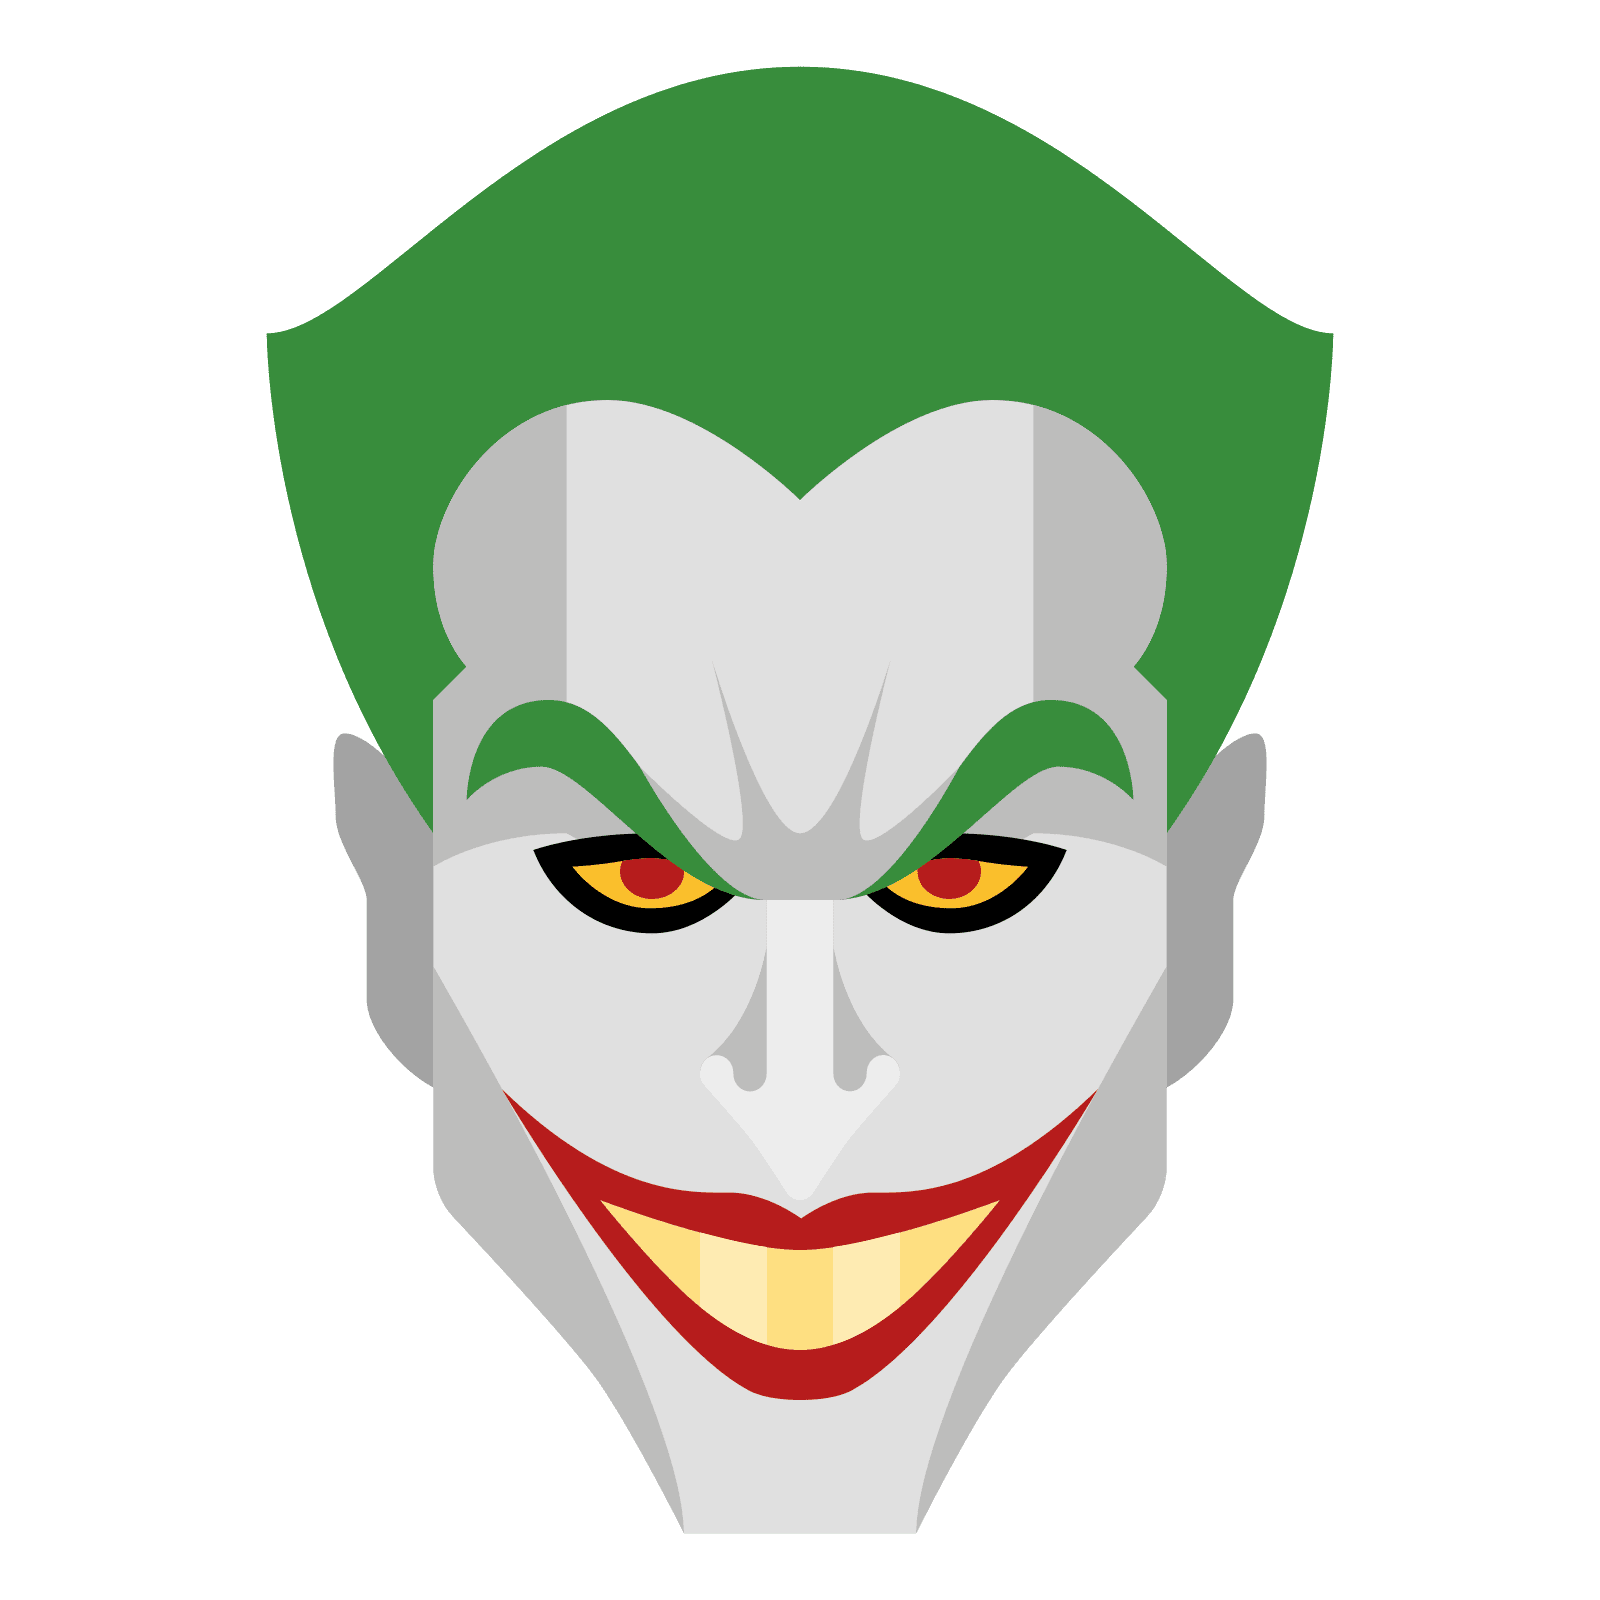 Svg Joker Images Free - 169+ Popular SVG Design